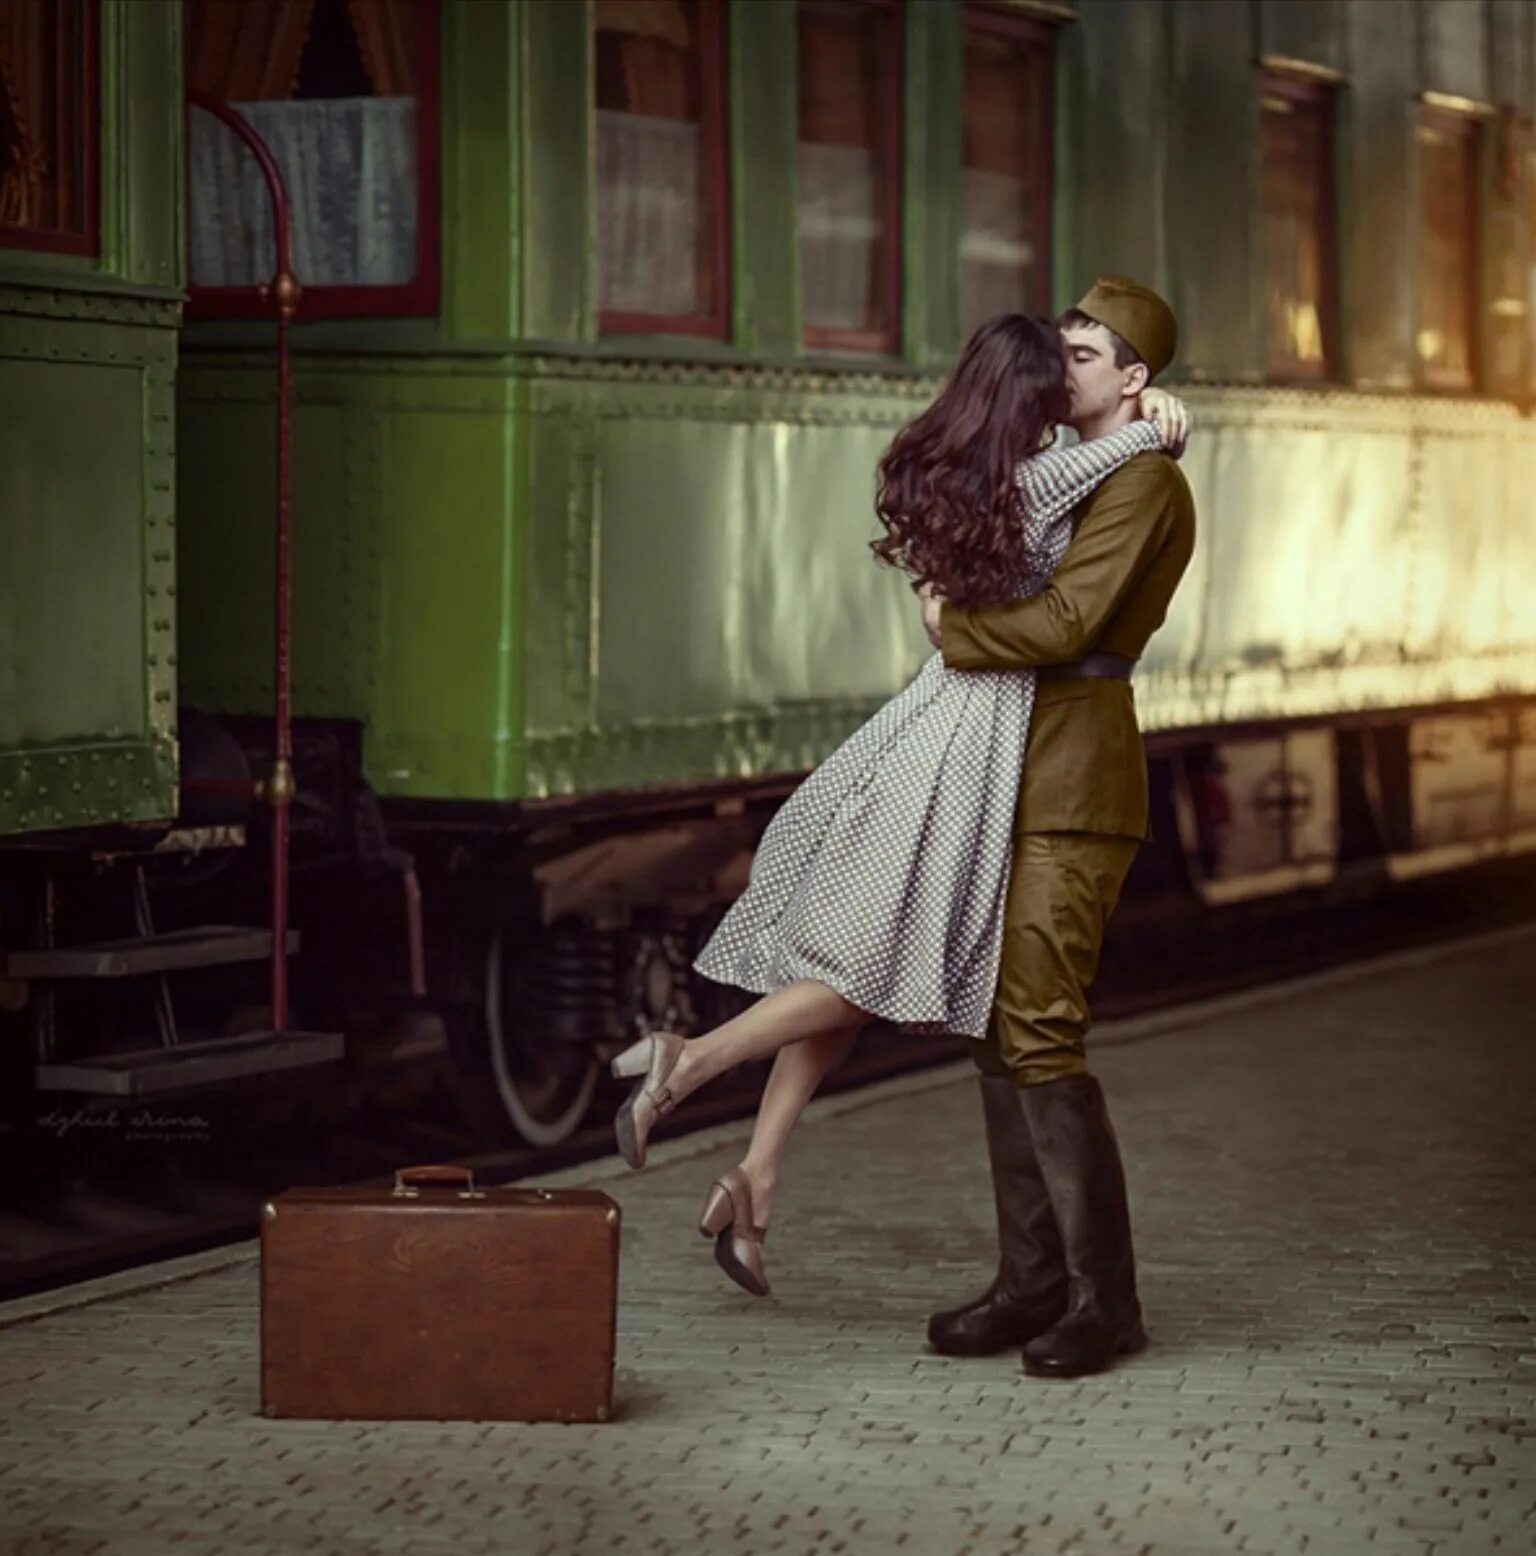 Встреча на вокзале. Встреча на перроне. Поцелуй на вокзале. Мужчина и женщина на вокзале.